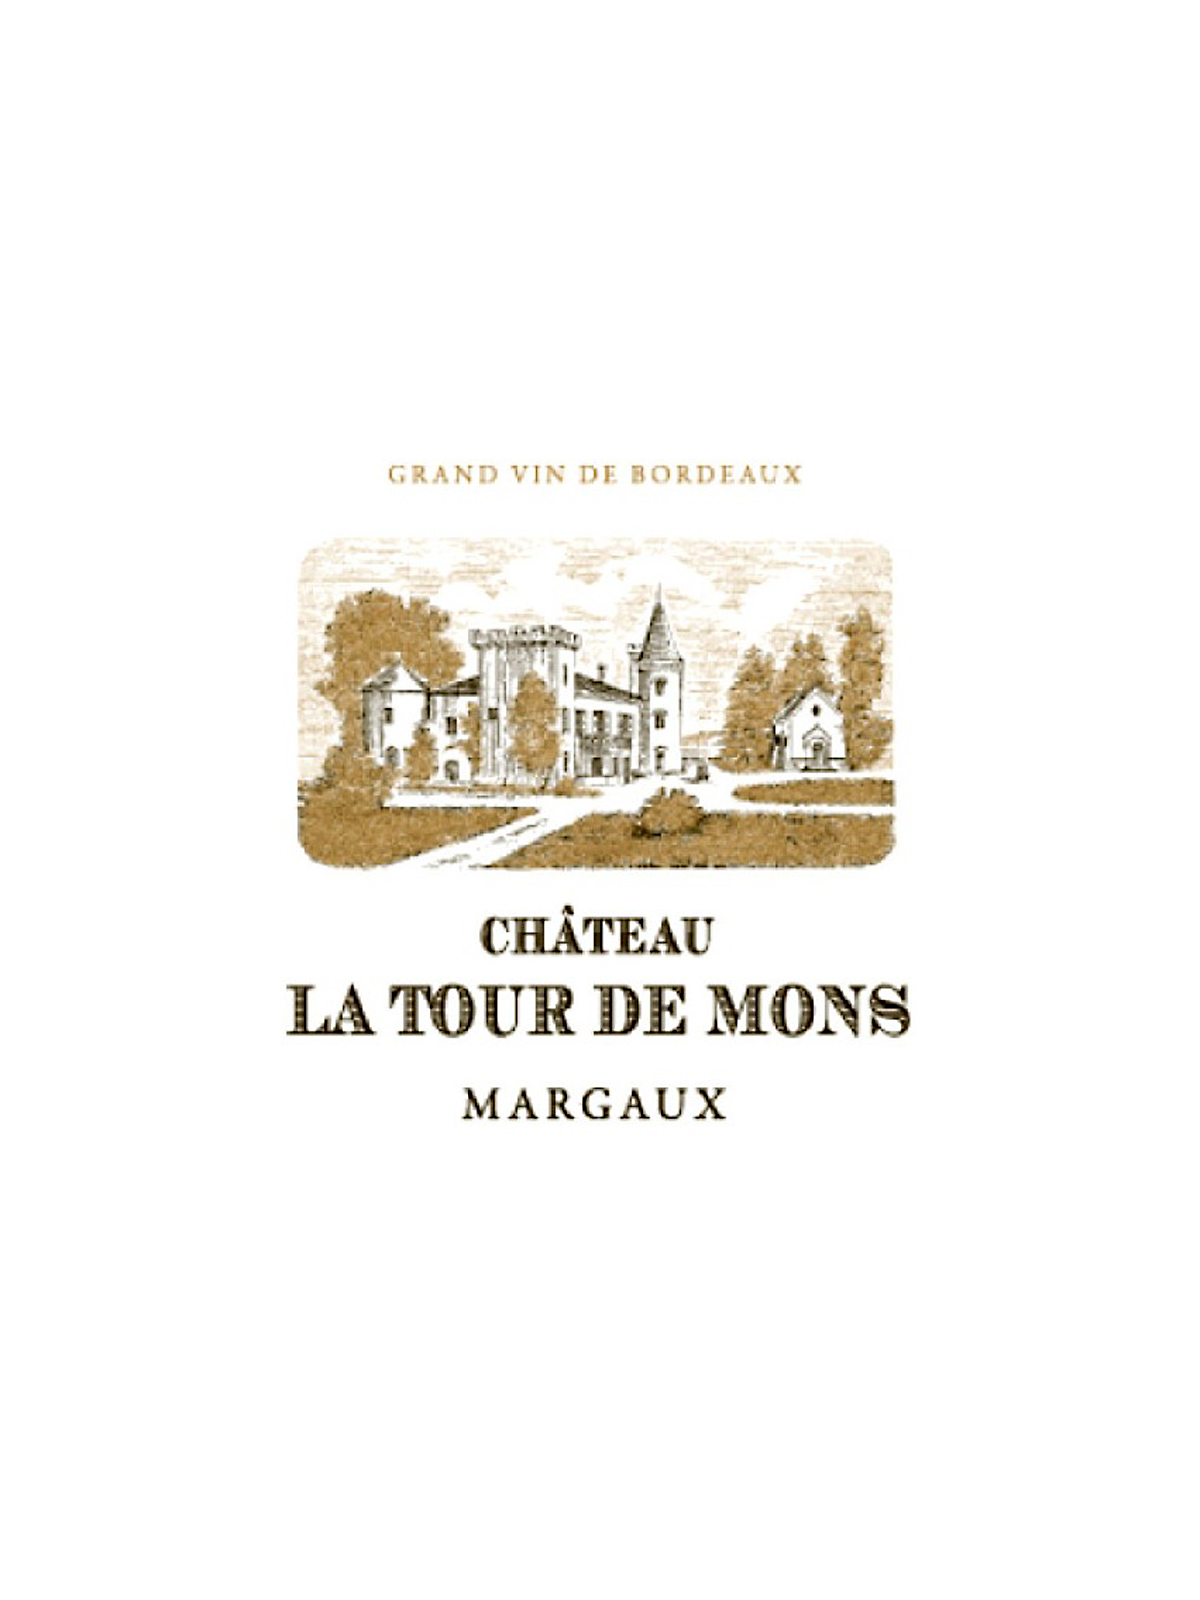 2016 Chateau La Tour De Mons Margaux - click image for full description